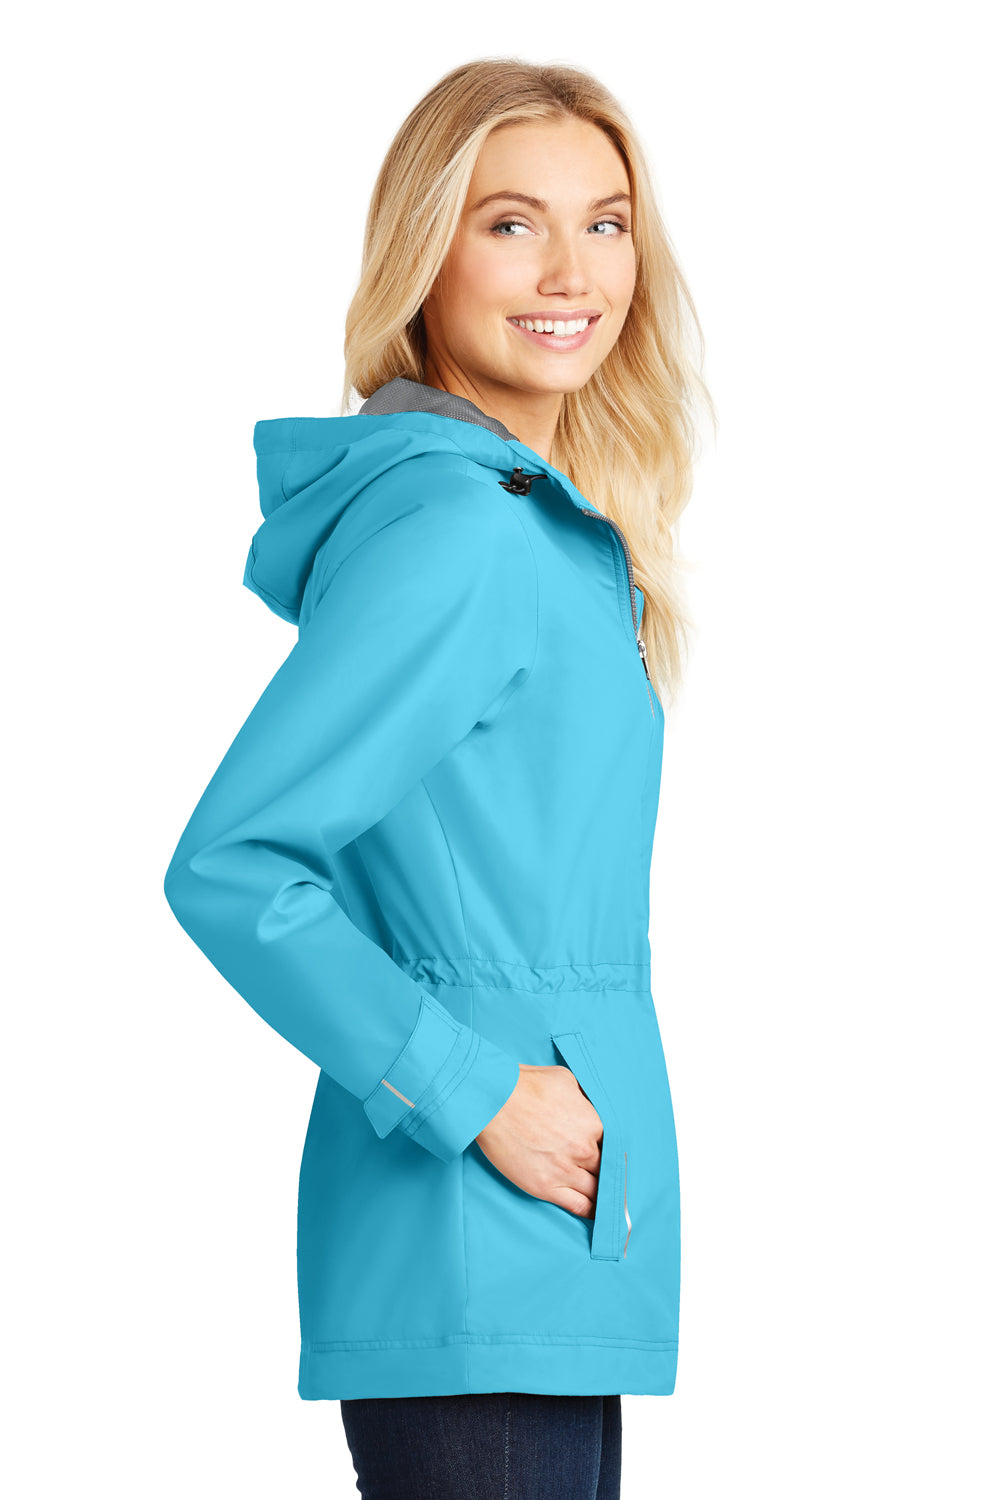 Port Authority L7710 Womens Northwest Slicker Waterproof Full Zip Hooded Jacket Isla Blue Side